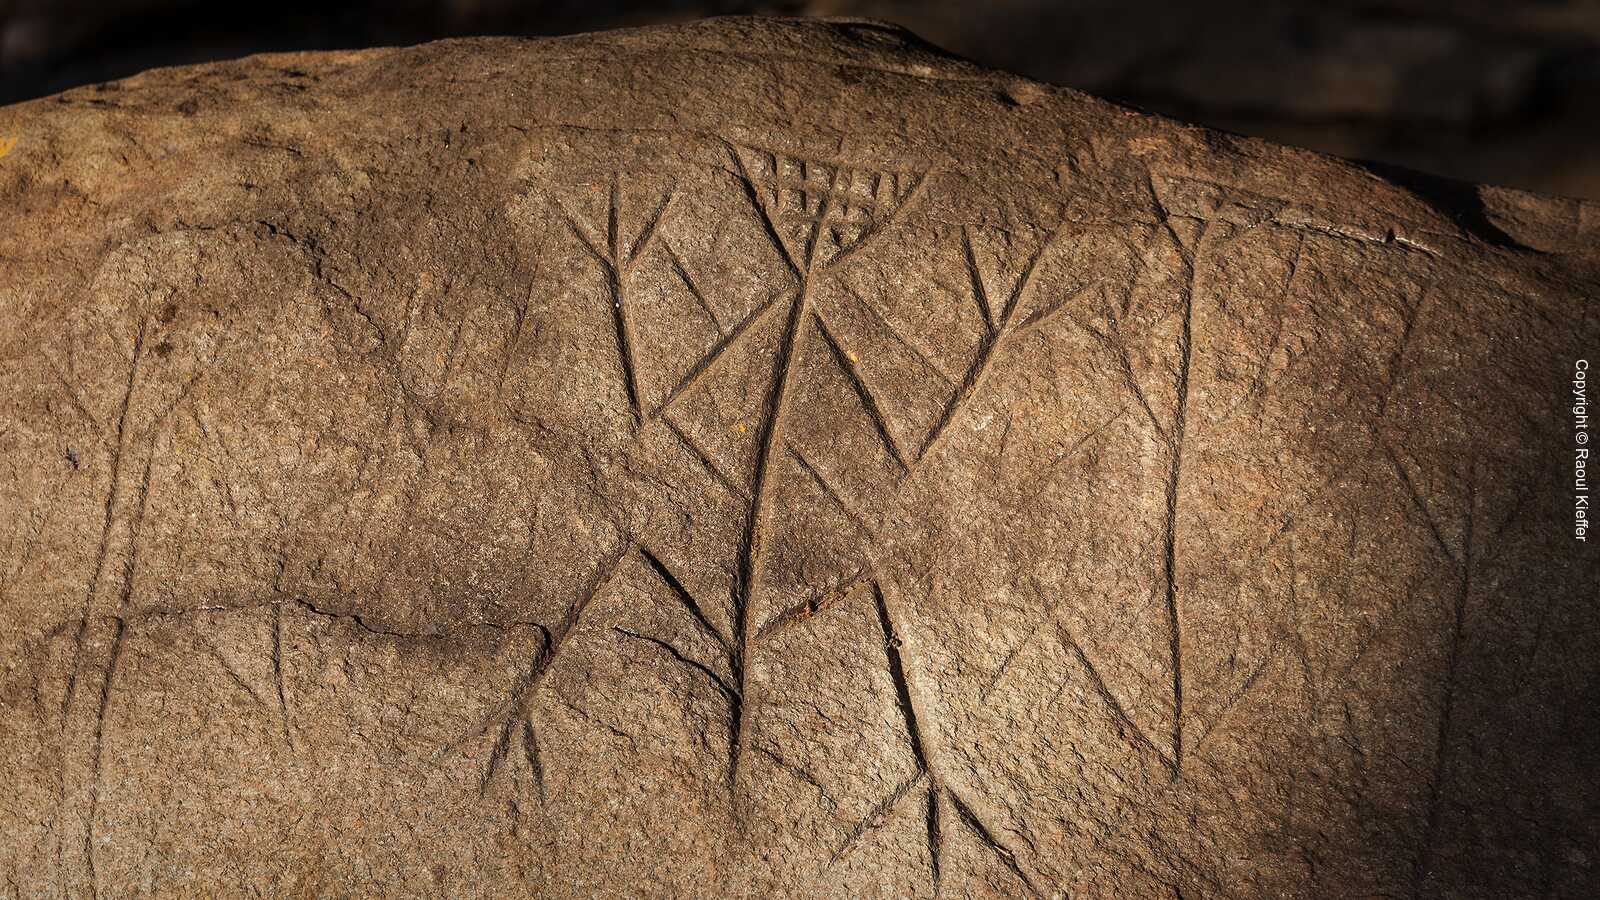 Engraved Rocks of Carapa